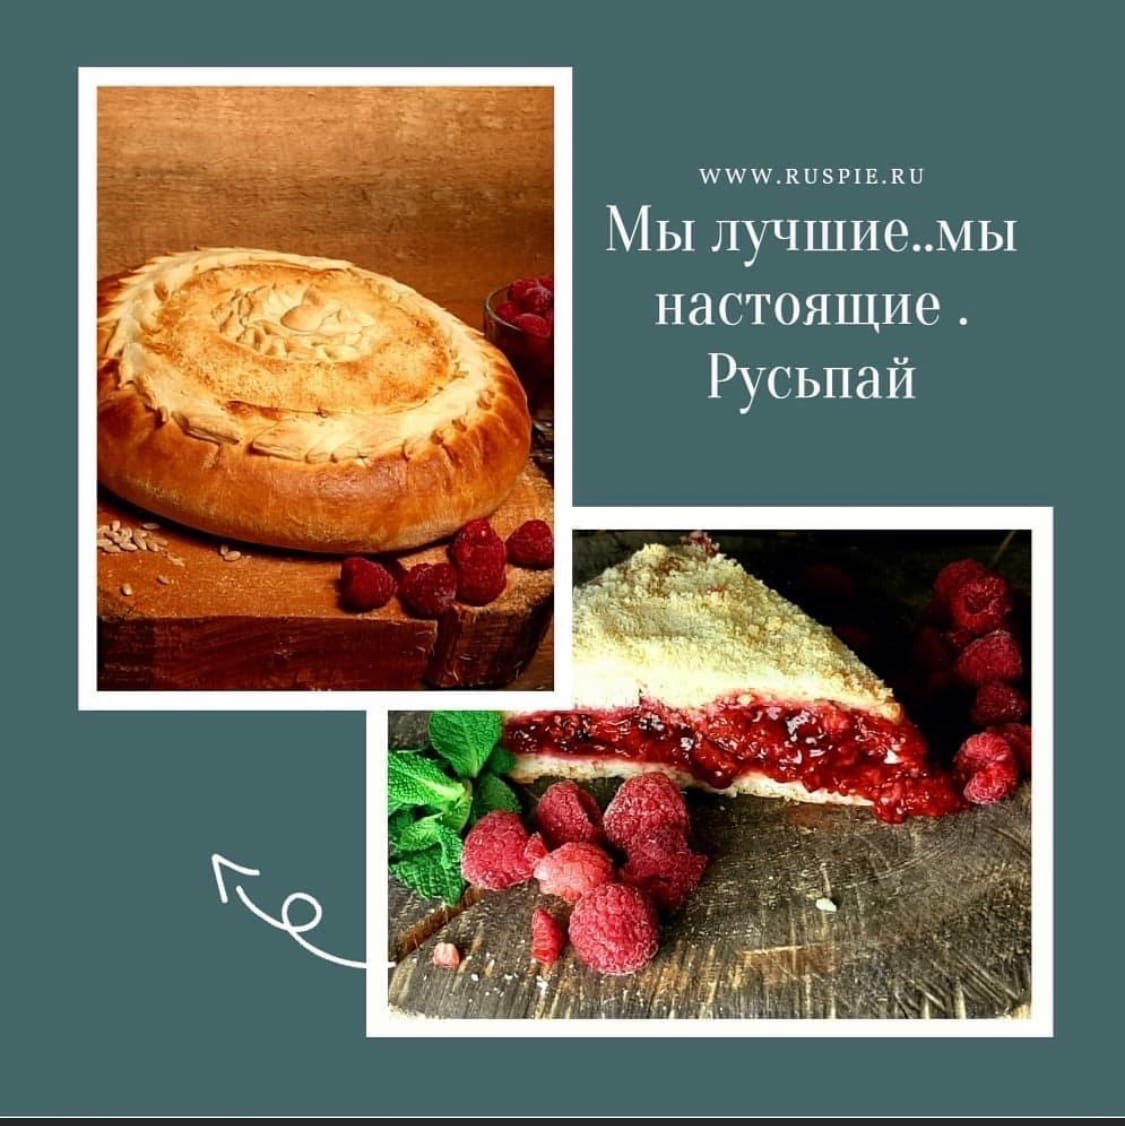 фото: РУСЪПАЙ - пироги из натуральных продуктов